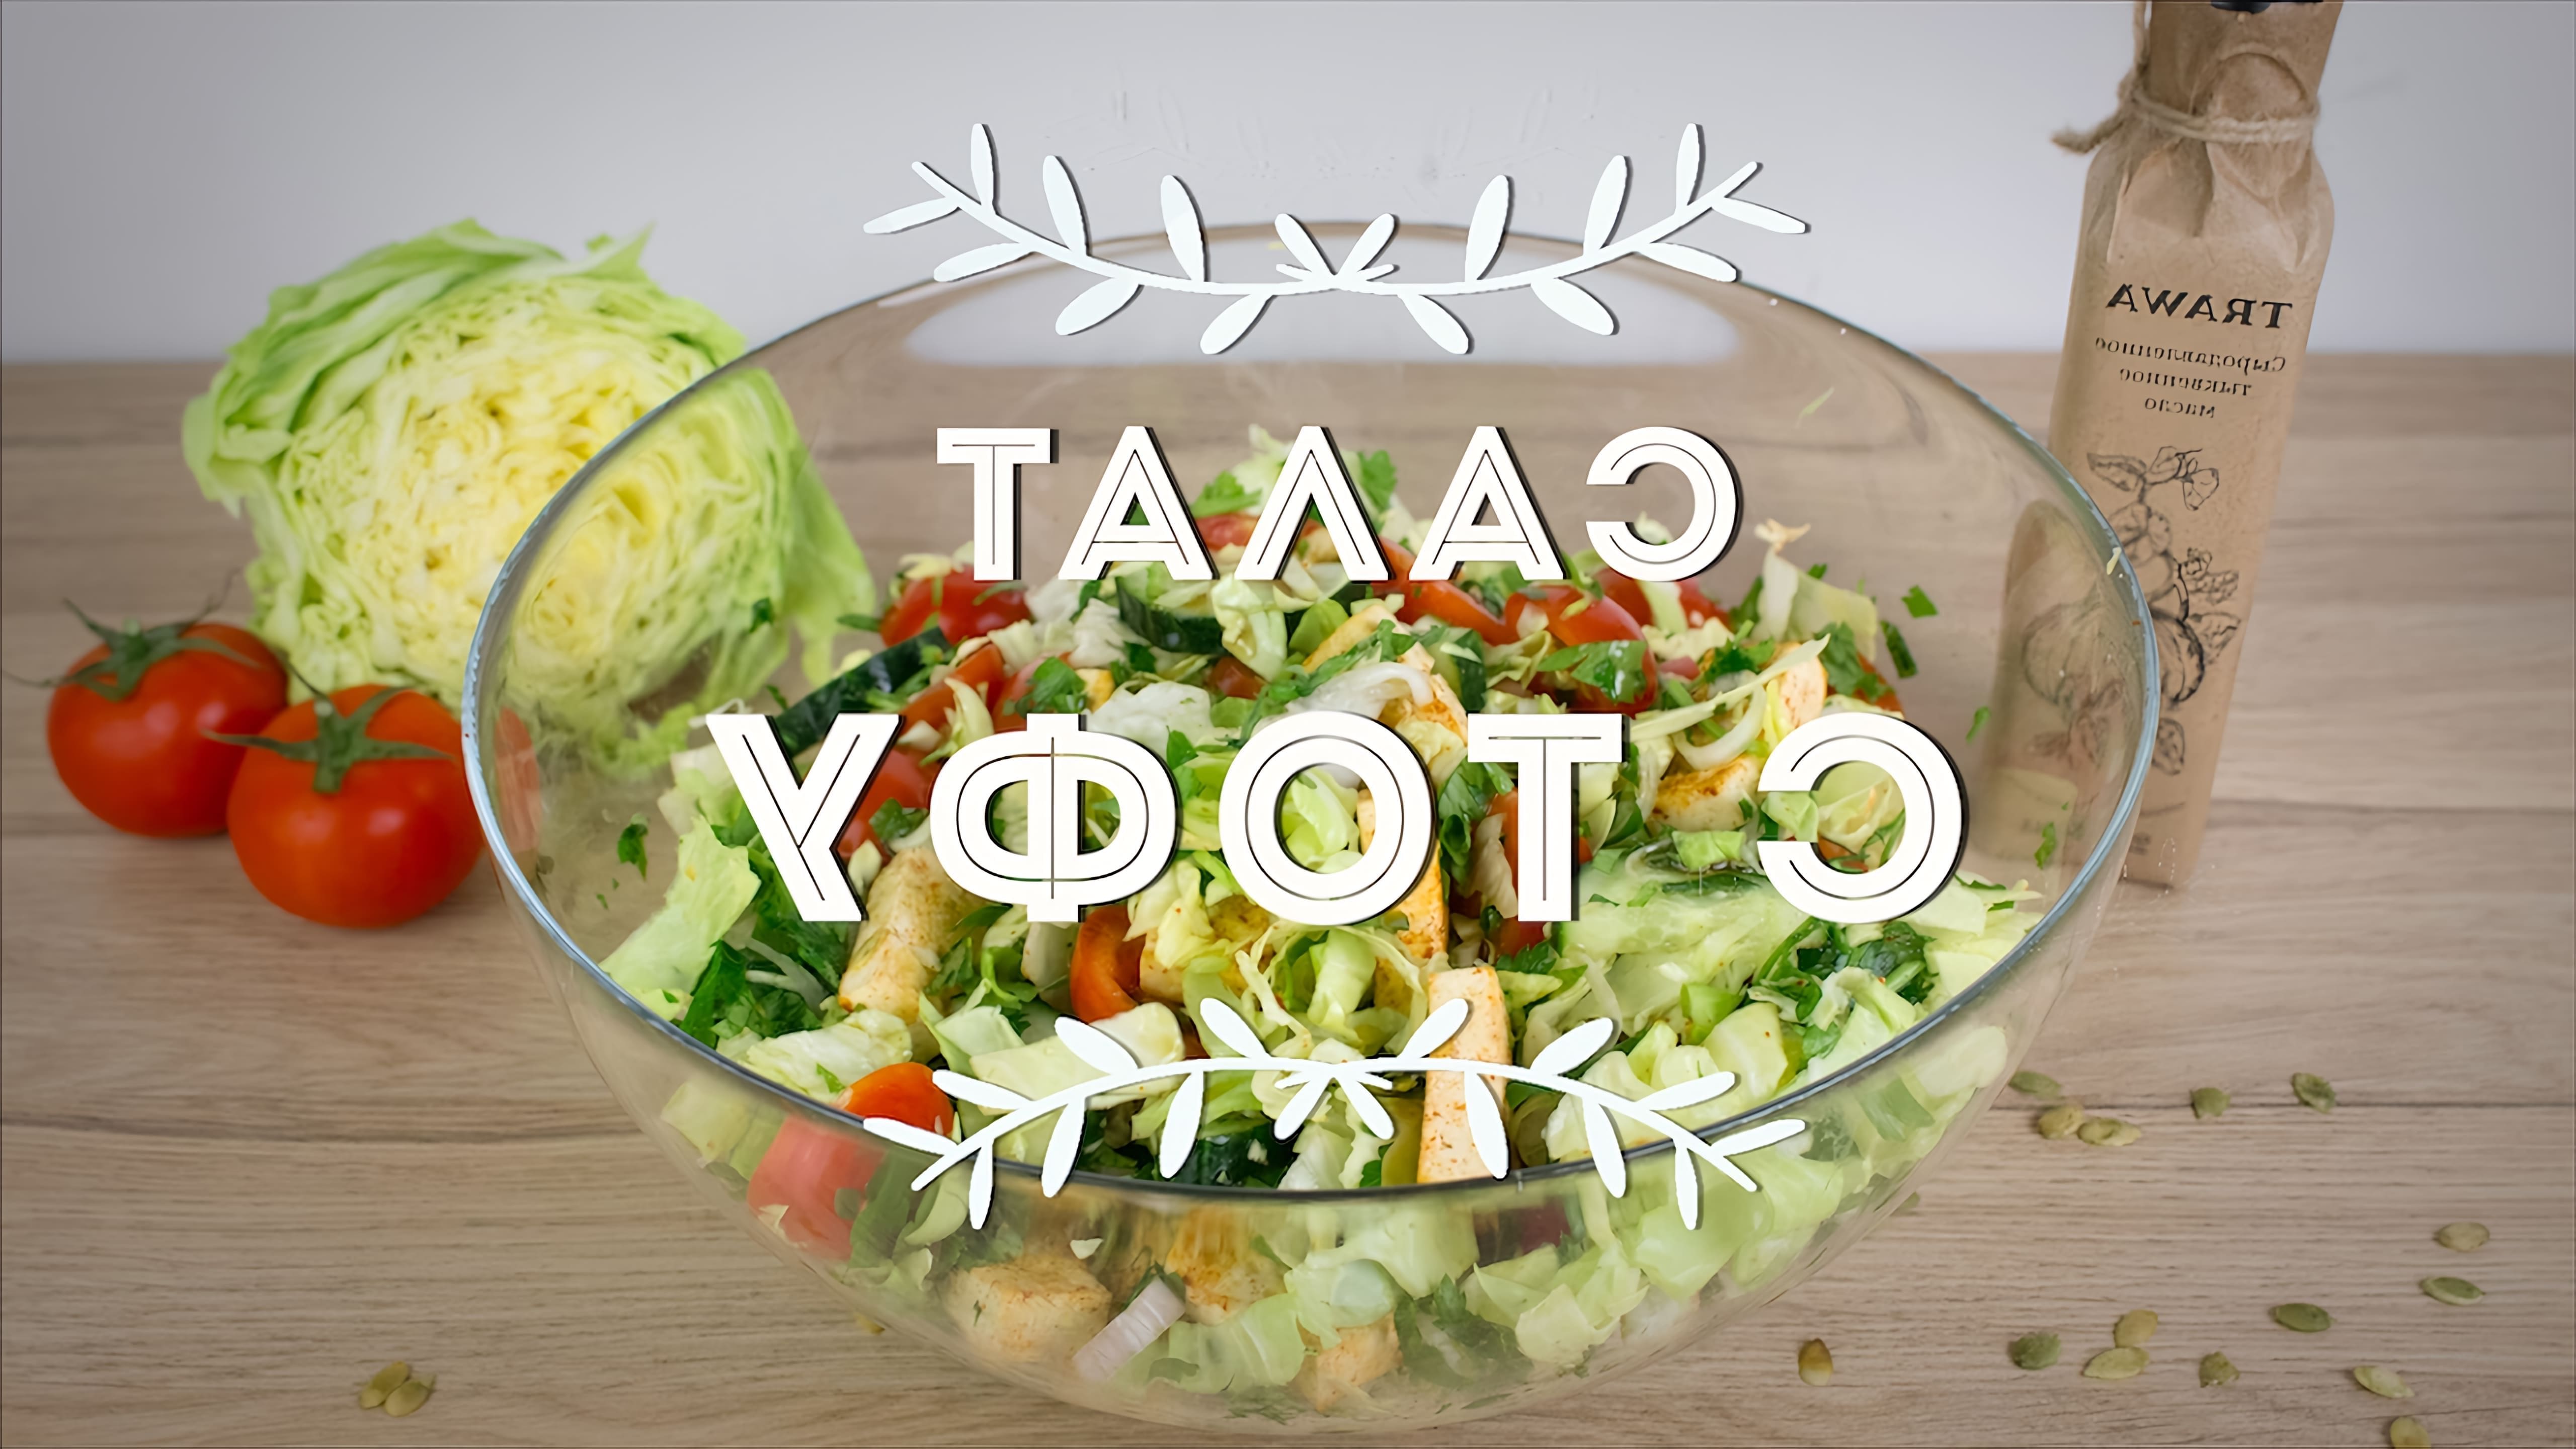 Салат с тофу - это веганский рецепт, который может быть приготовлен без использования мяса или других продуктов животного происхождения